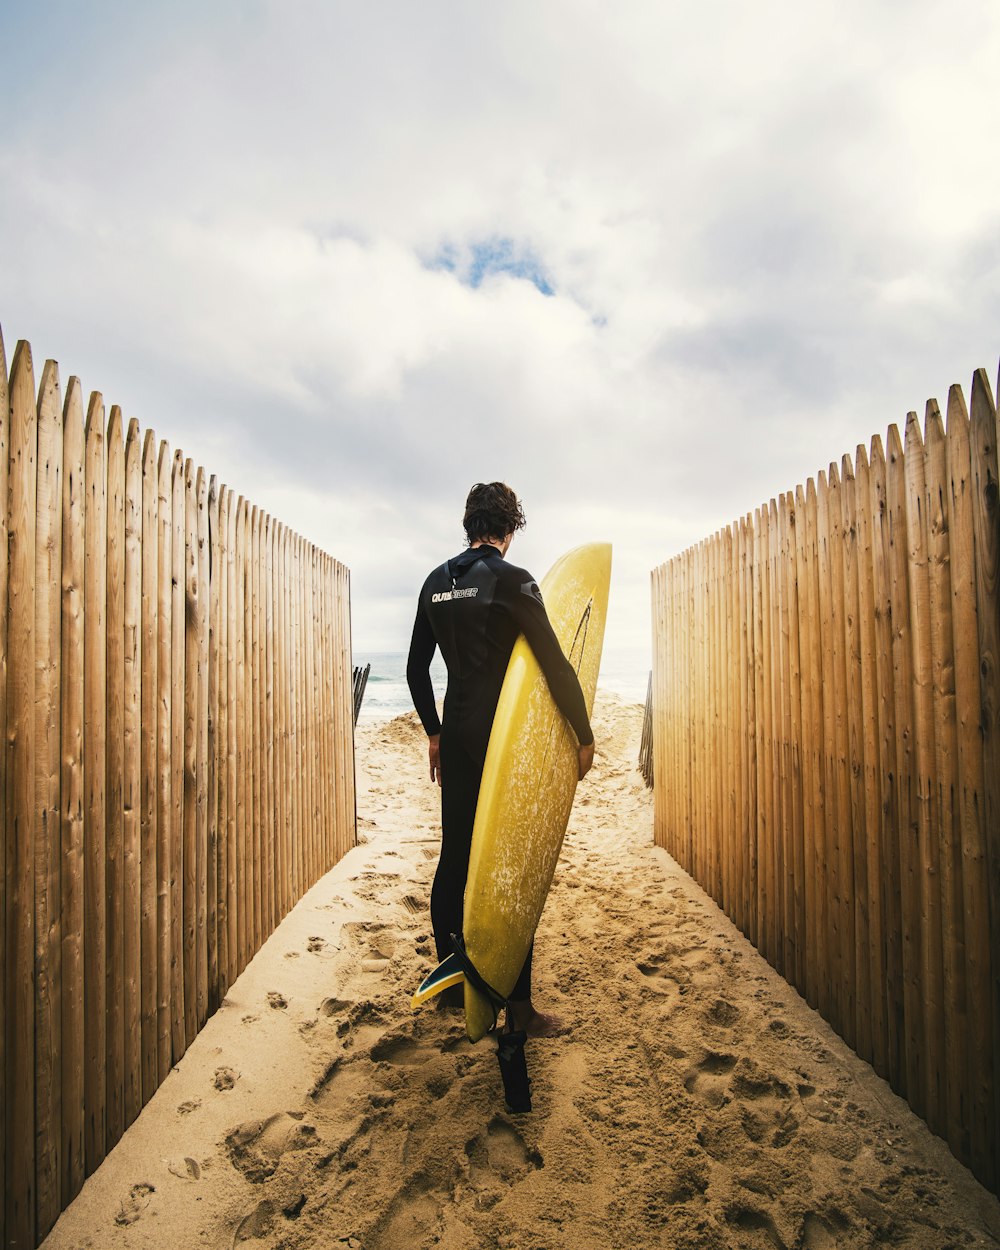 Persona de pie entre vallas de privacidad mientras sostiene una tabla de surf amarilla durante el día